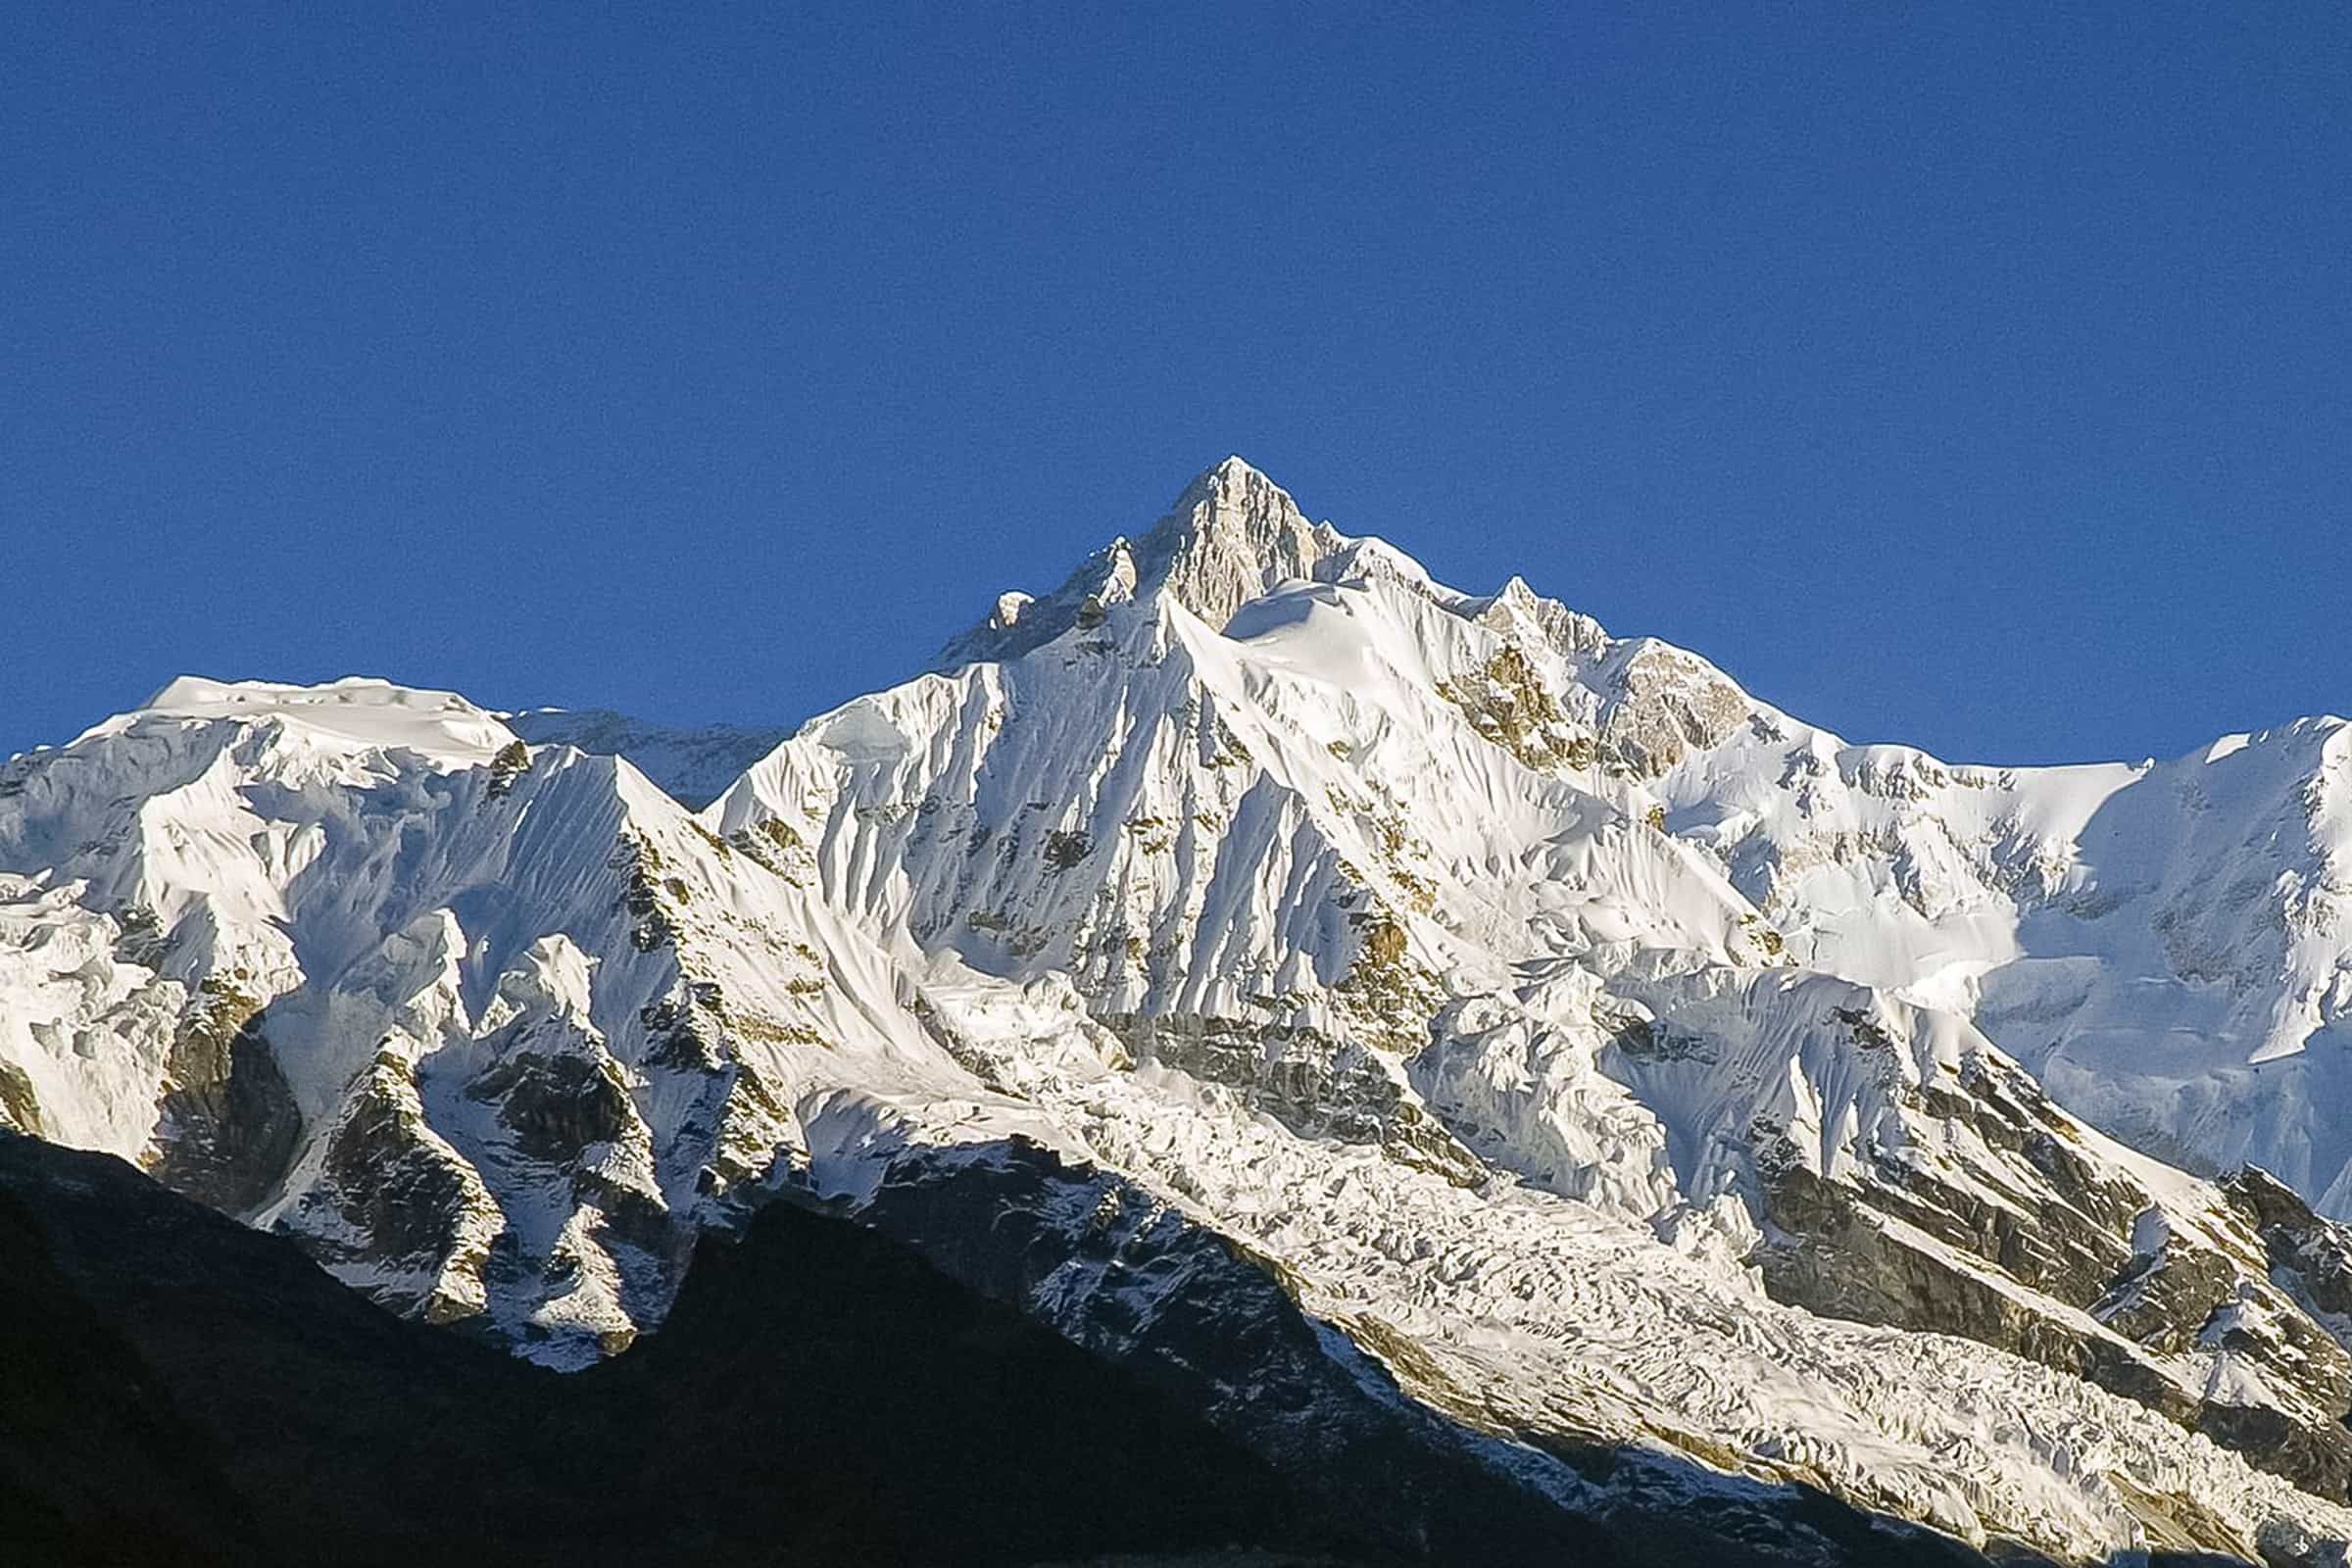 sikkim.ch | Nordostinidien und Sikkim Reisen - Bild zu Your portal to North East India, Bhutan and Sikkim